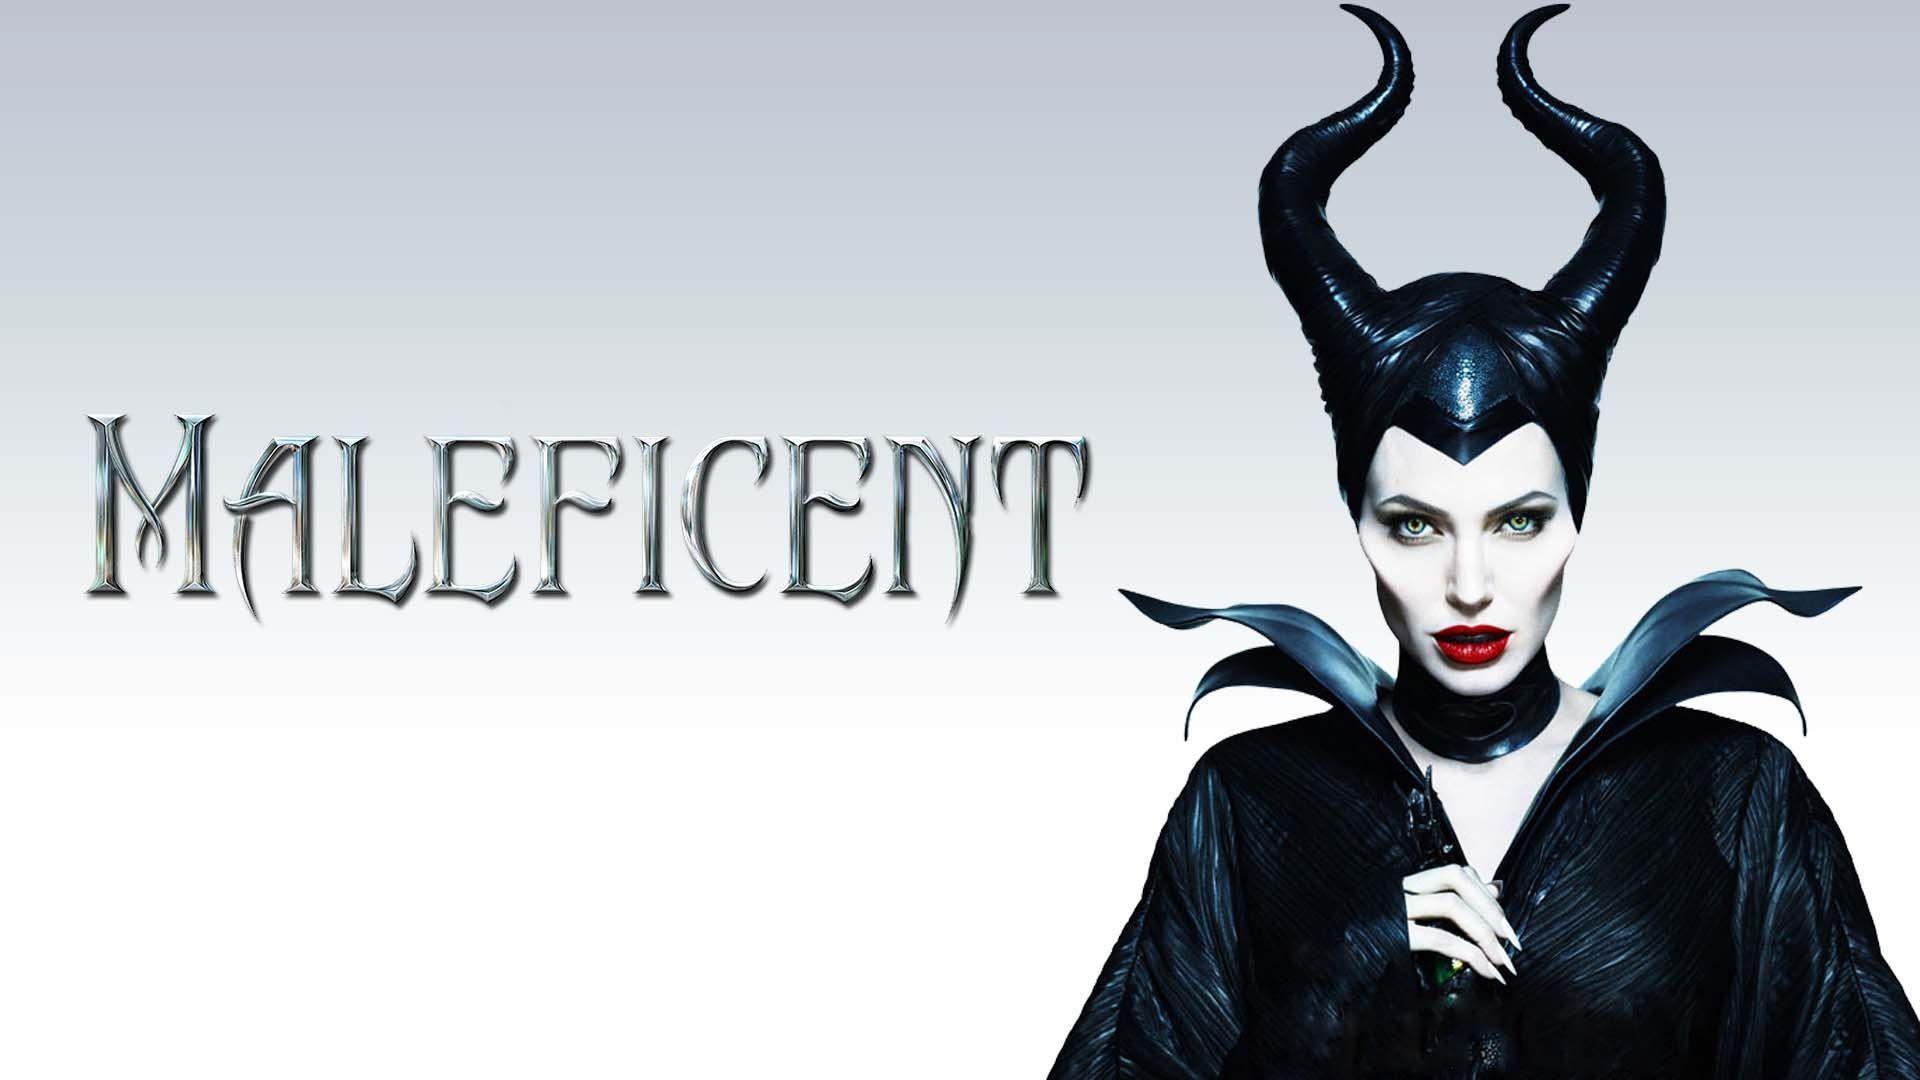 Maleficent Latest HD Wallpaper Free Download. New HD Wallpaper